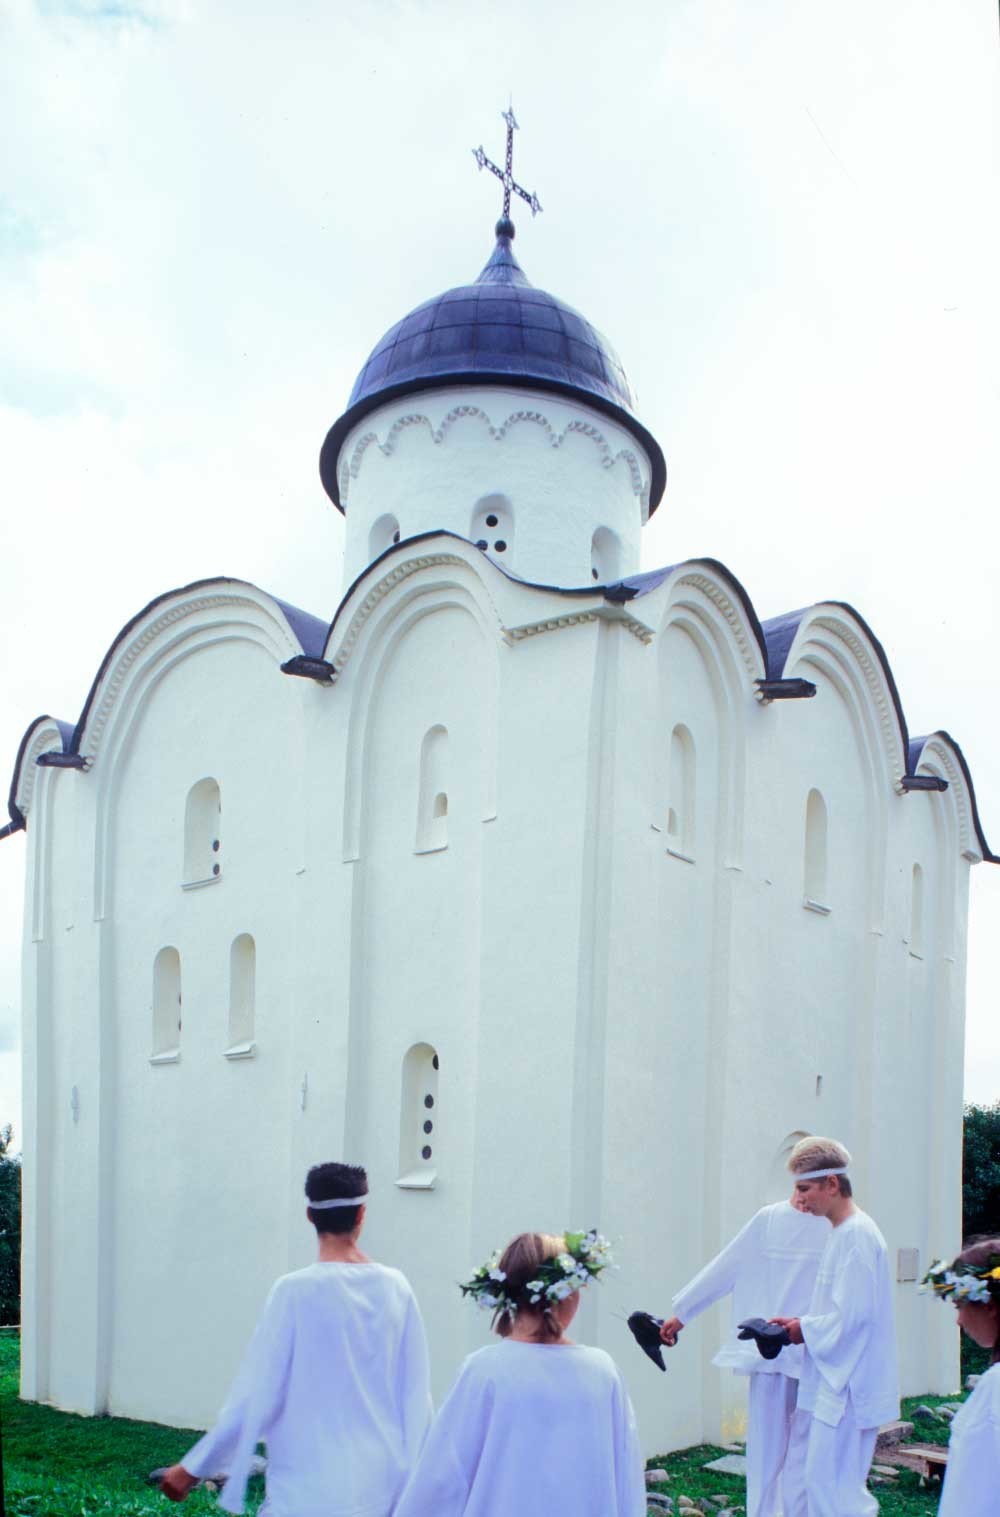 Iglesia de San Jorge, vista noroeste tomada durante el festival anual de la ciudad. 16 de agosto de 2003